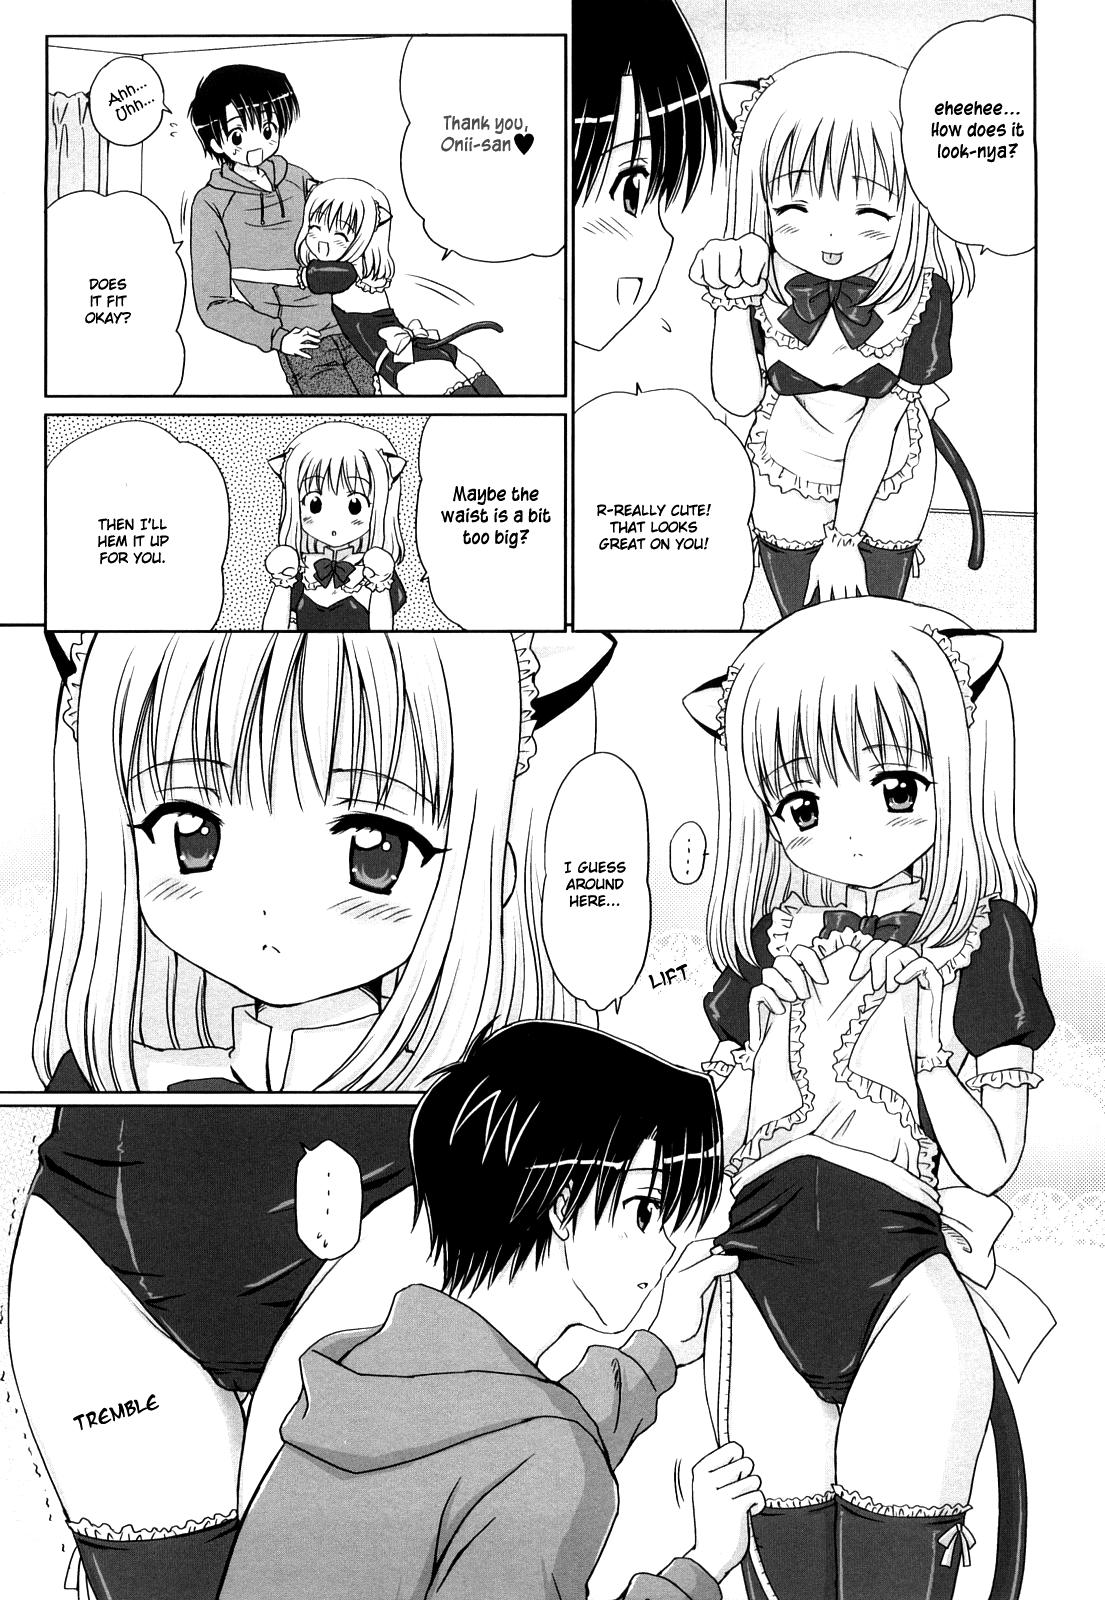 Gostosas Daisuki Daisuki Namorada - Page 9